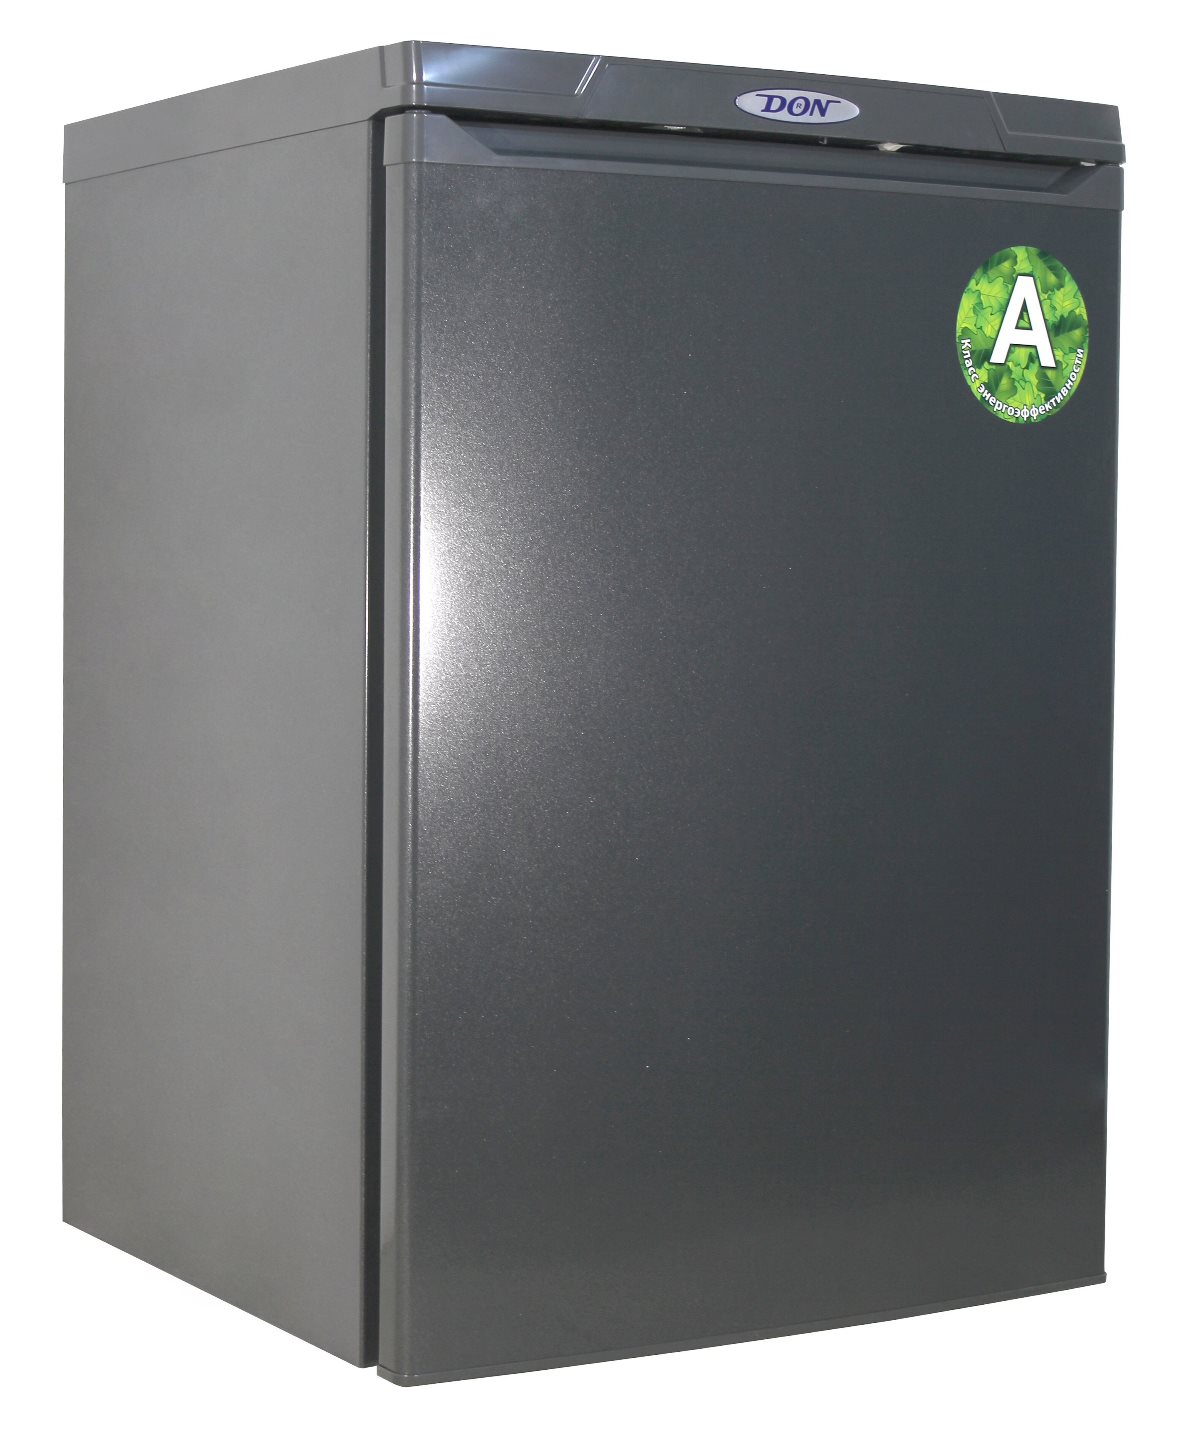 Холодильник don r-407 g графит